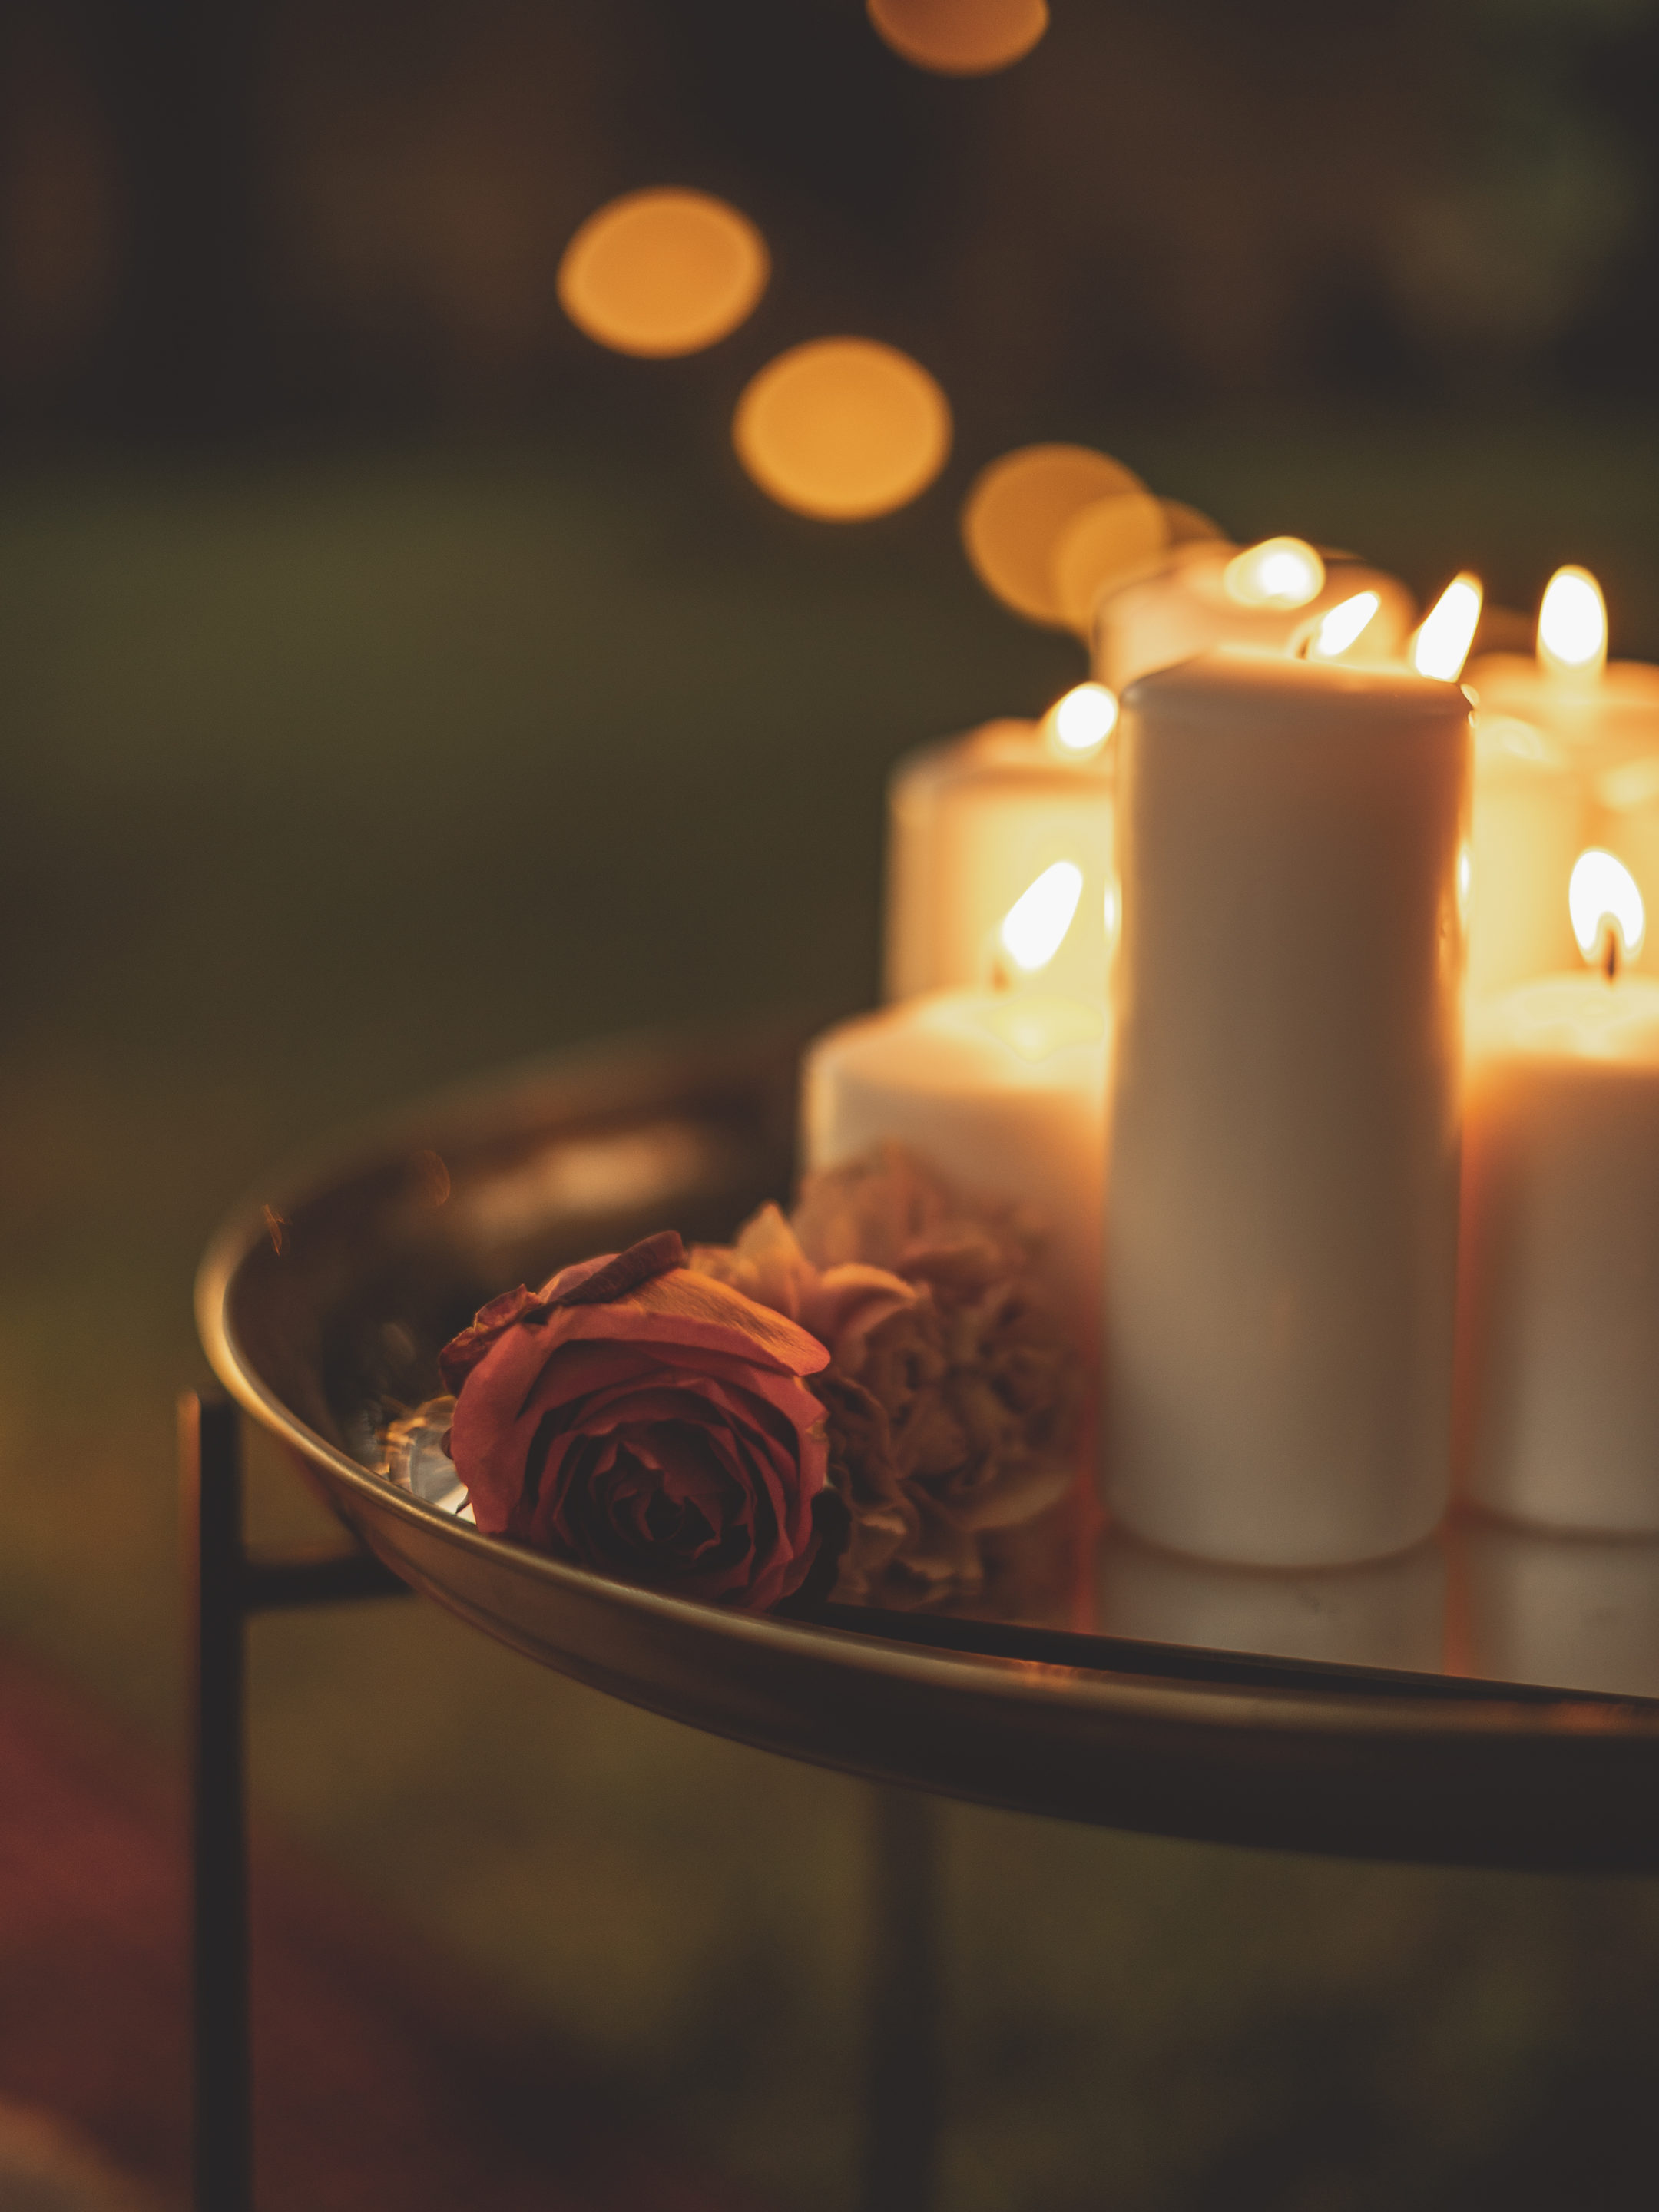 Anniversaire : Créer un chemin de table avec des bougies - Marie